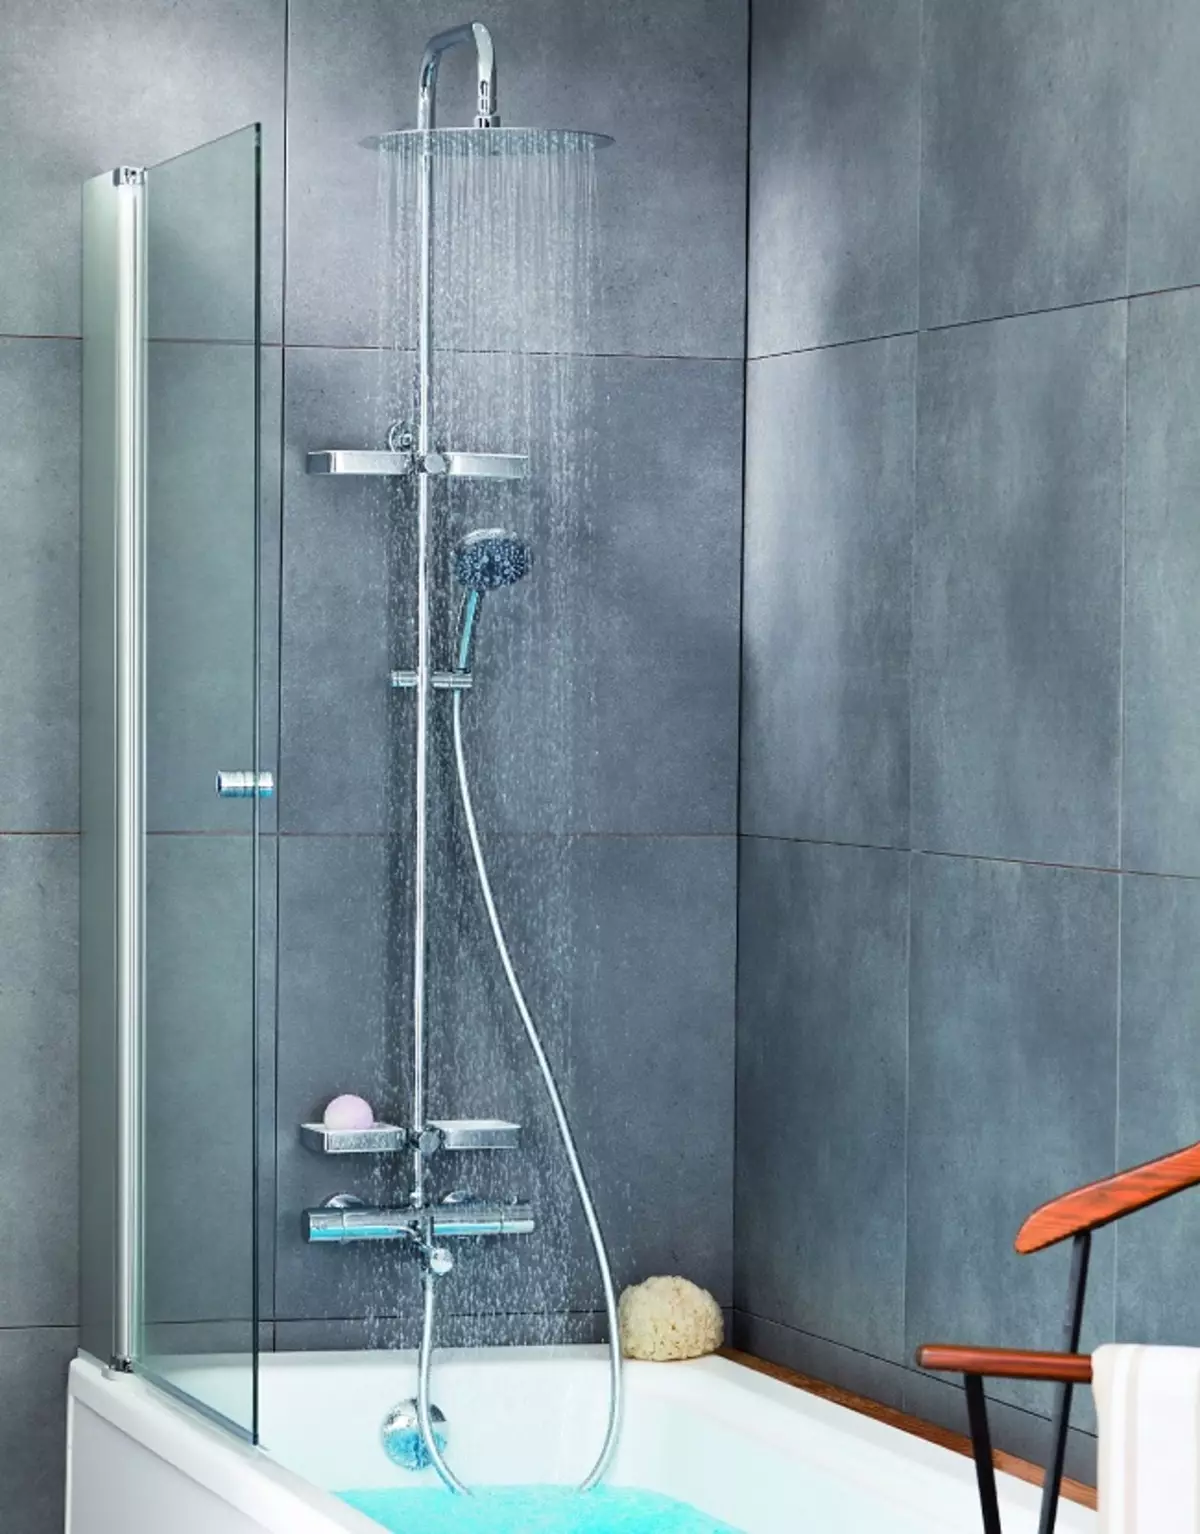 Rafturi de duș: soiuri de sisteme de duș pentru baie. Ceea ce este inclus în setul cu cască set pentru suflet? BRAVAT, LEMARK BRANDS Review și altele 21374_24